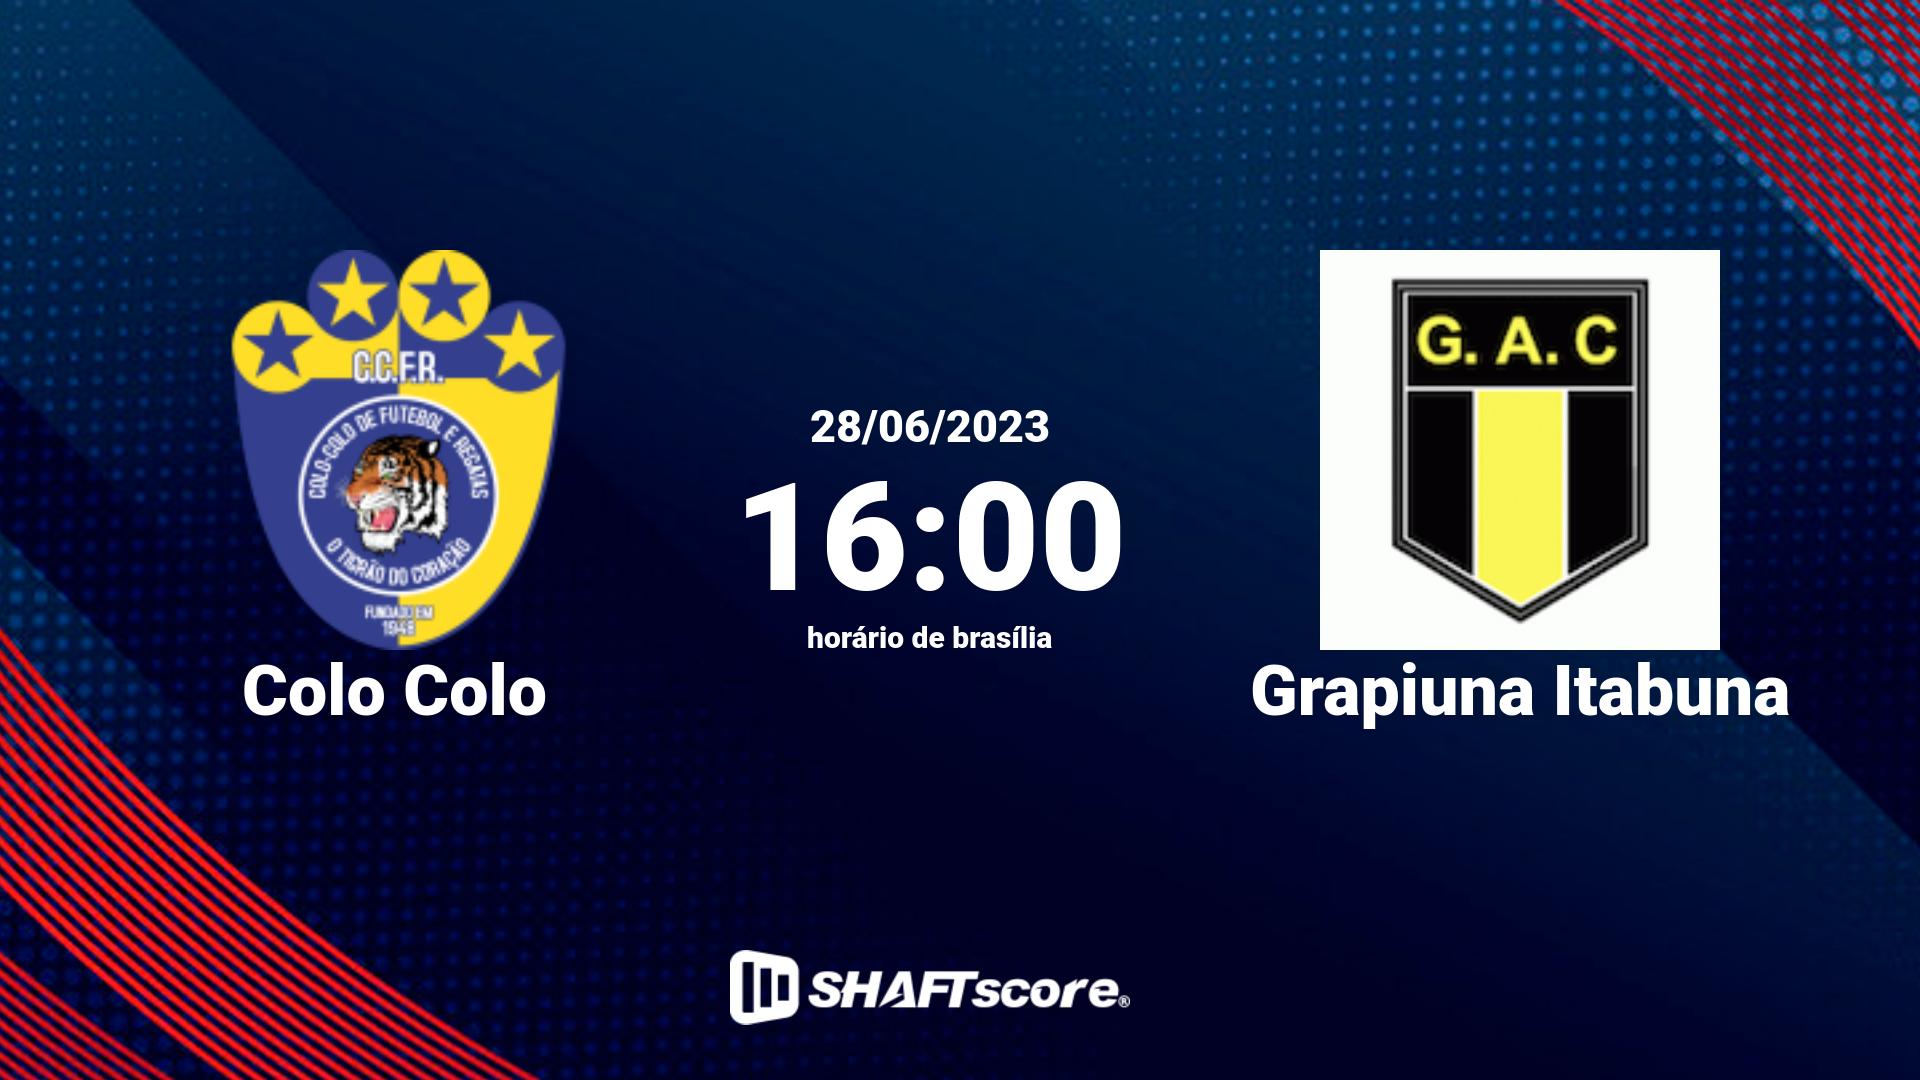 Estatísticas do jogo Colo Colo vs Grapiuna Itabuna 28.06 16:00